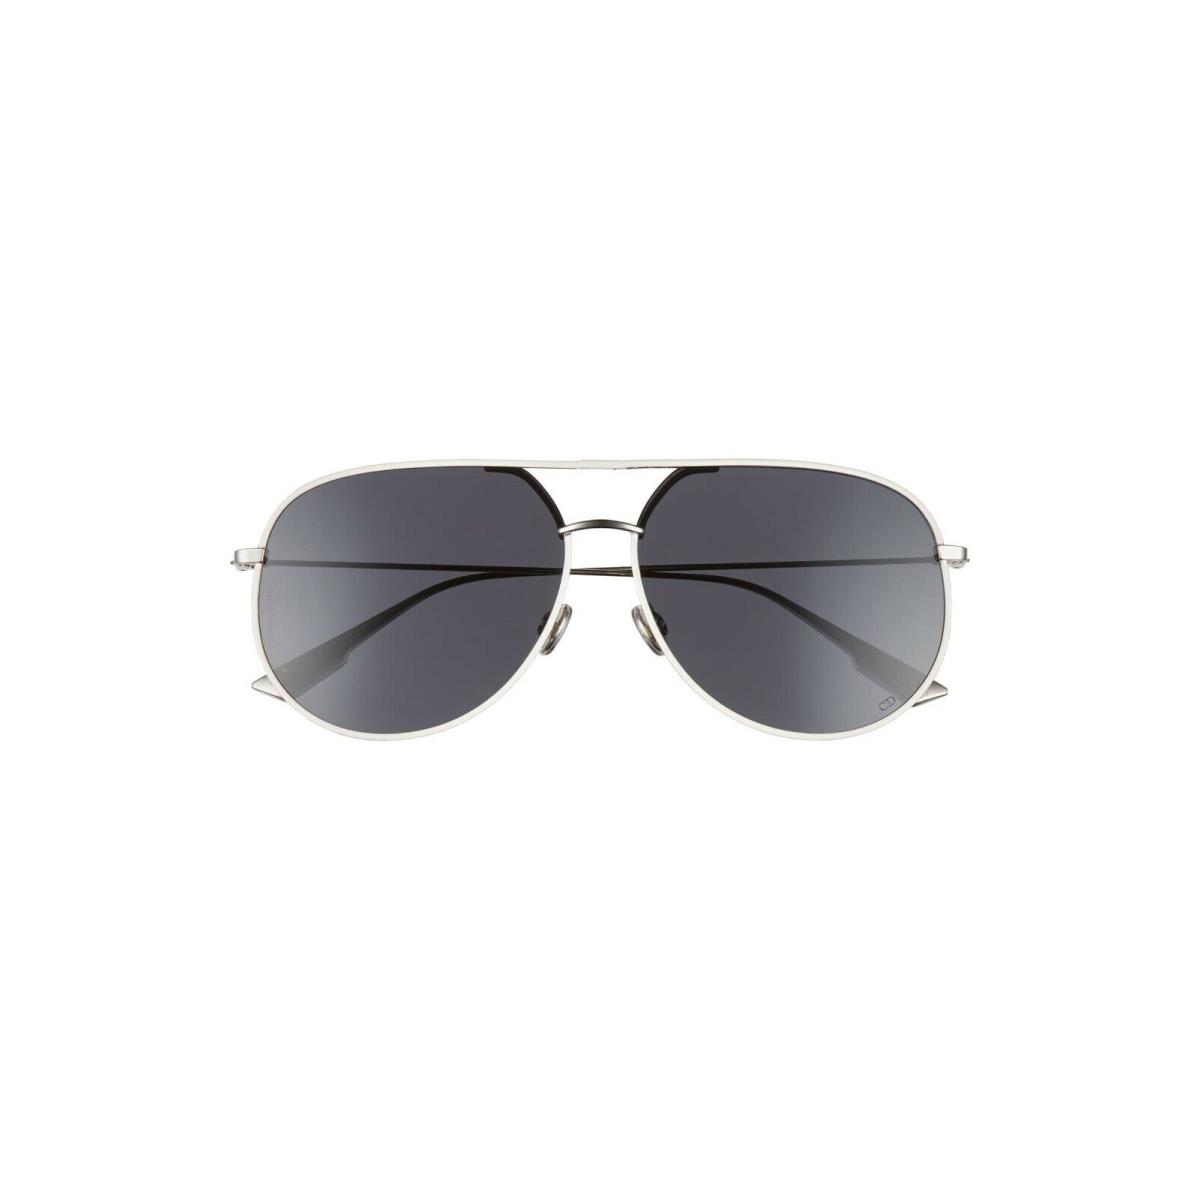 Dior sunglasses  - Gray Frame, Gray Lens 6